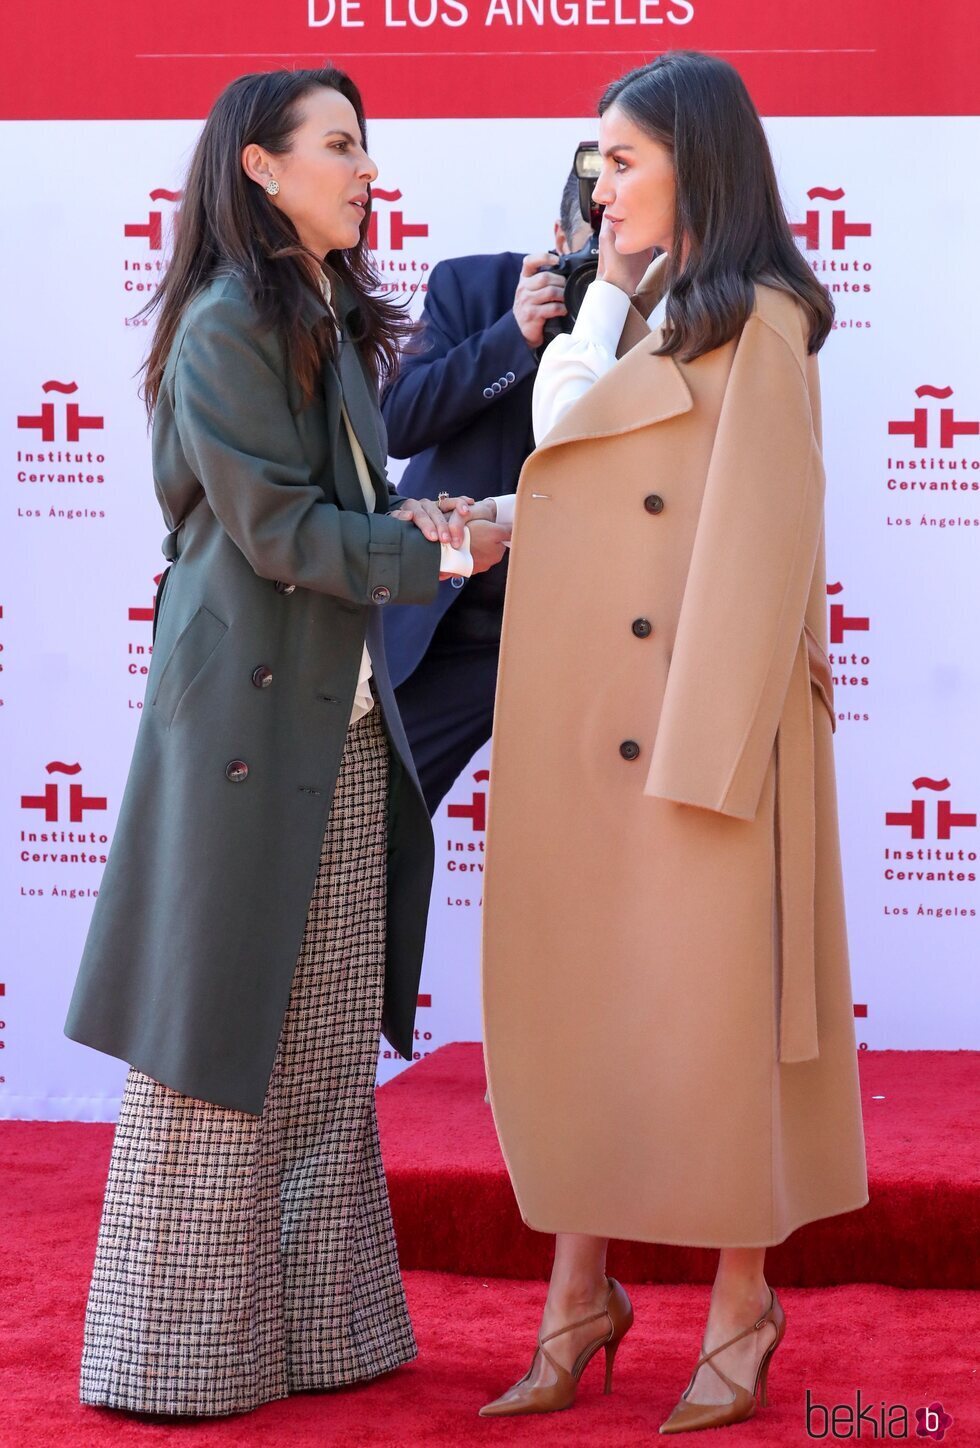 La Reina Letizia y Kate del Castillo en la inauguración de la sede del Instituto Cervantes en Los Angeles